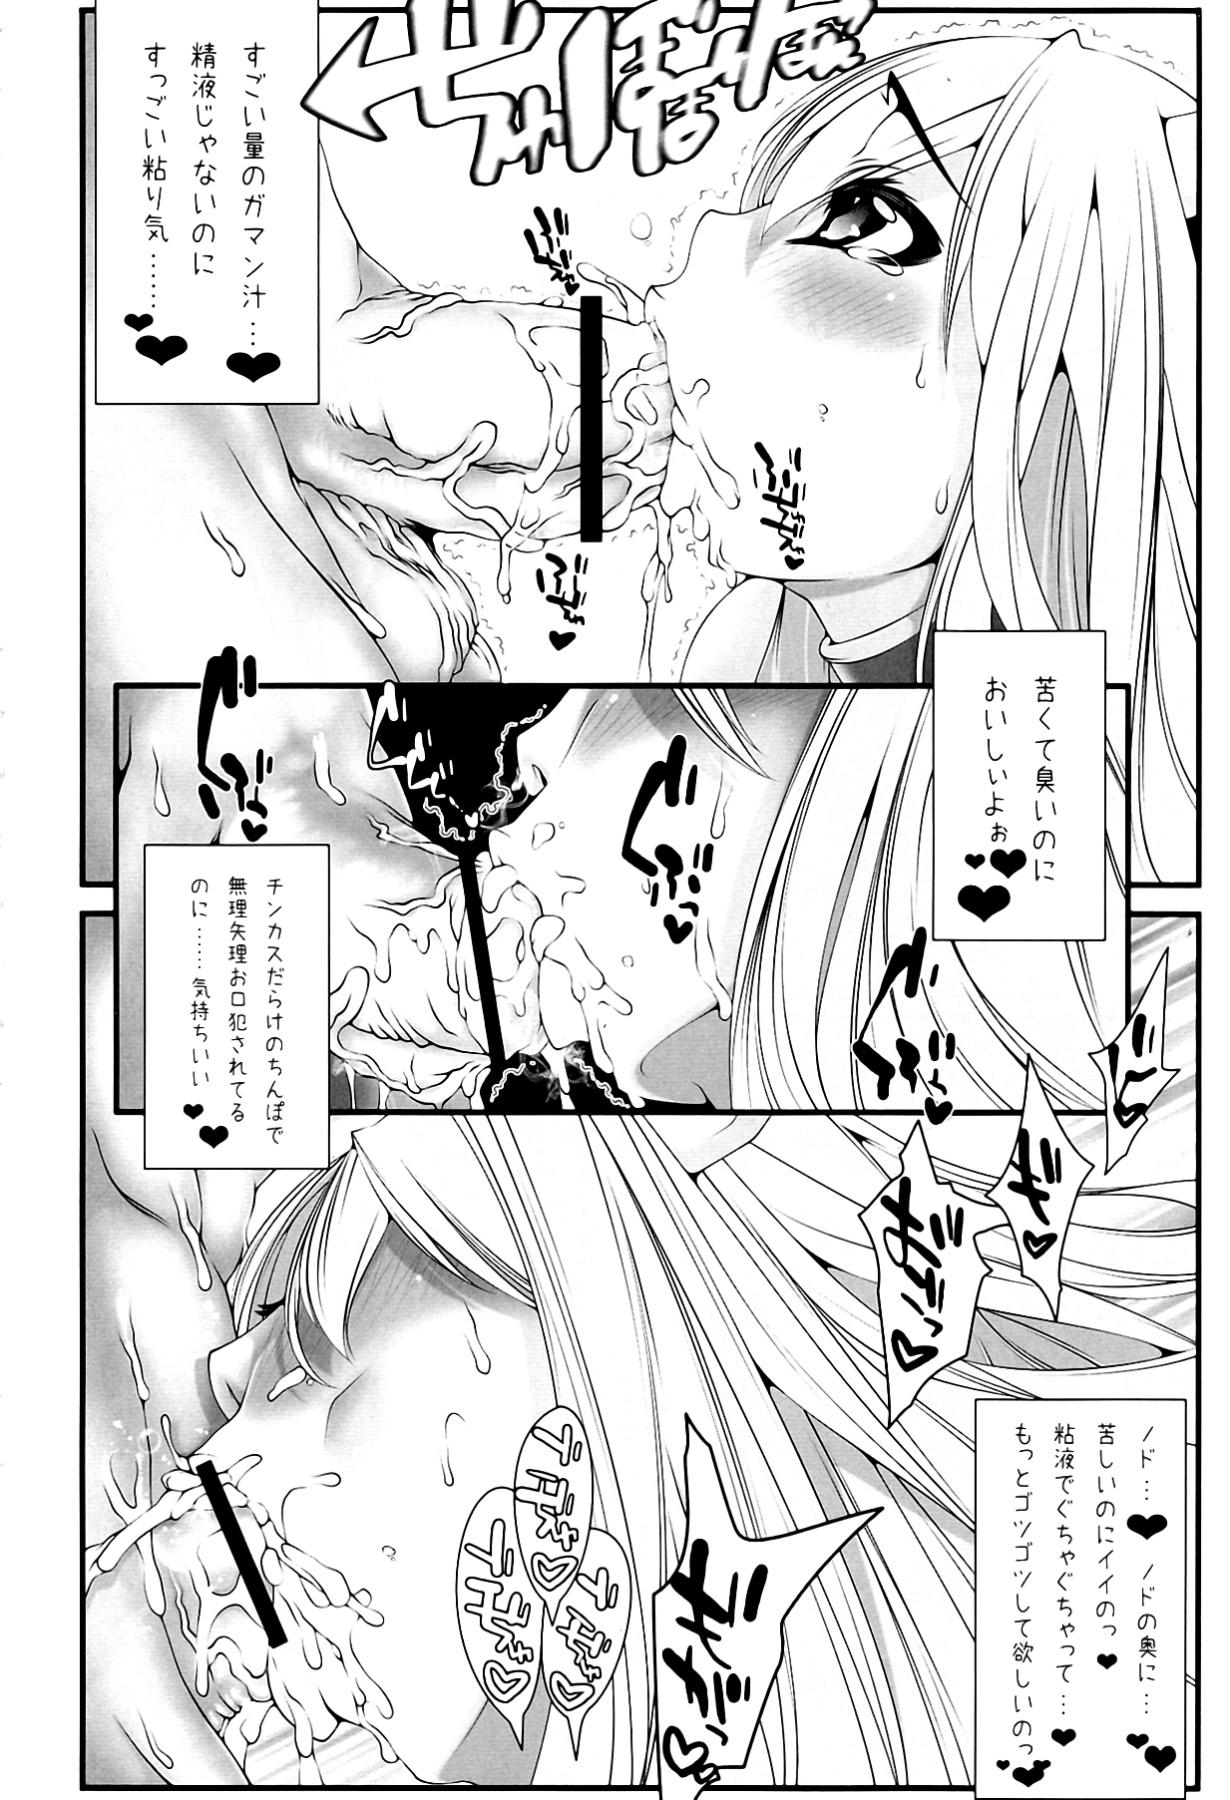 Teen Astraea-san to. - Sora no otoshimono Perverted - Page 6